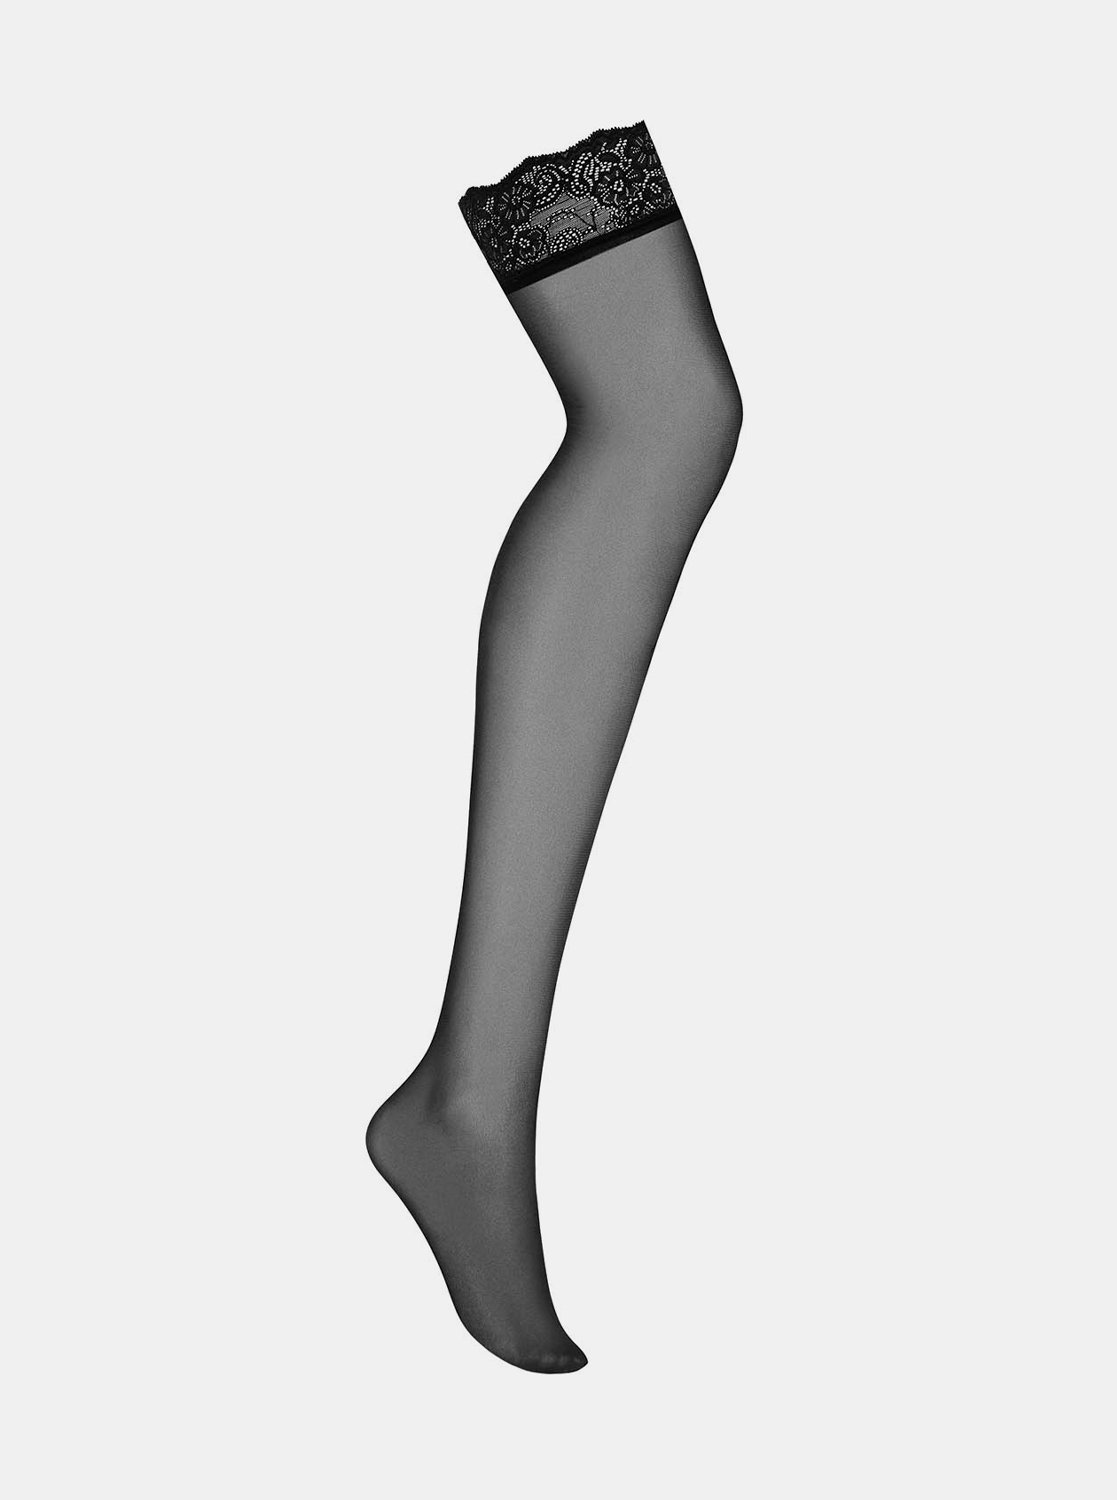 Dokonalé punčochy Amallie stockings - Obsessive černá